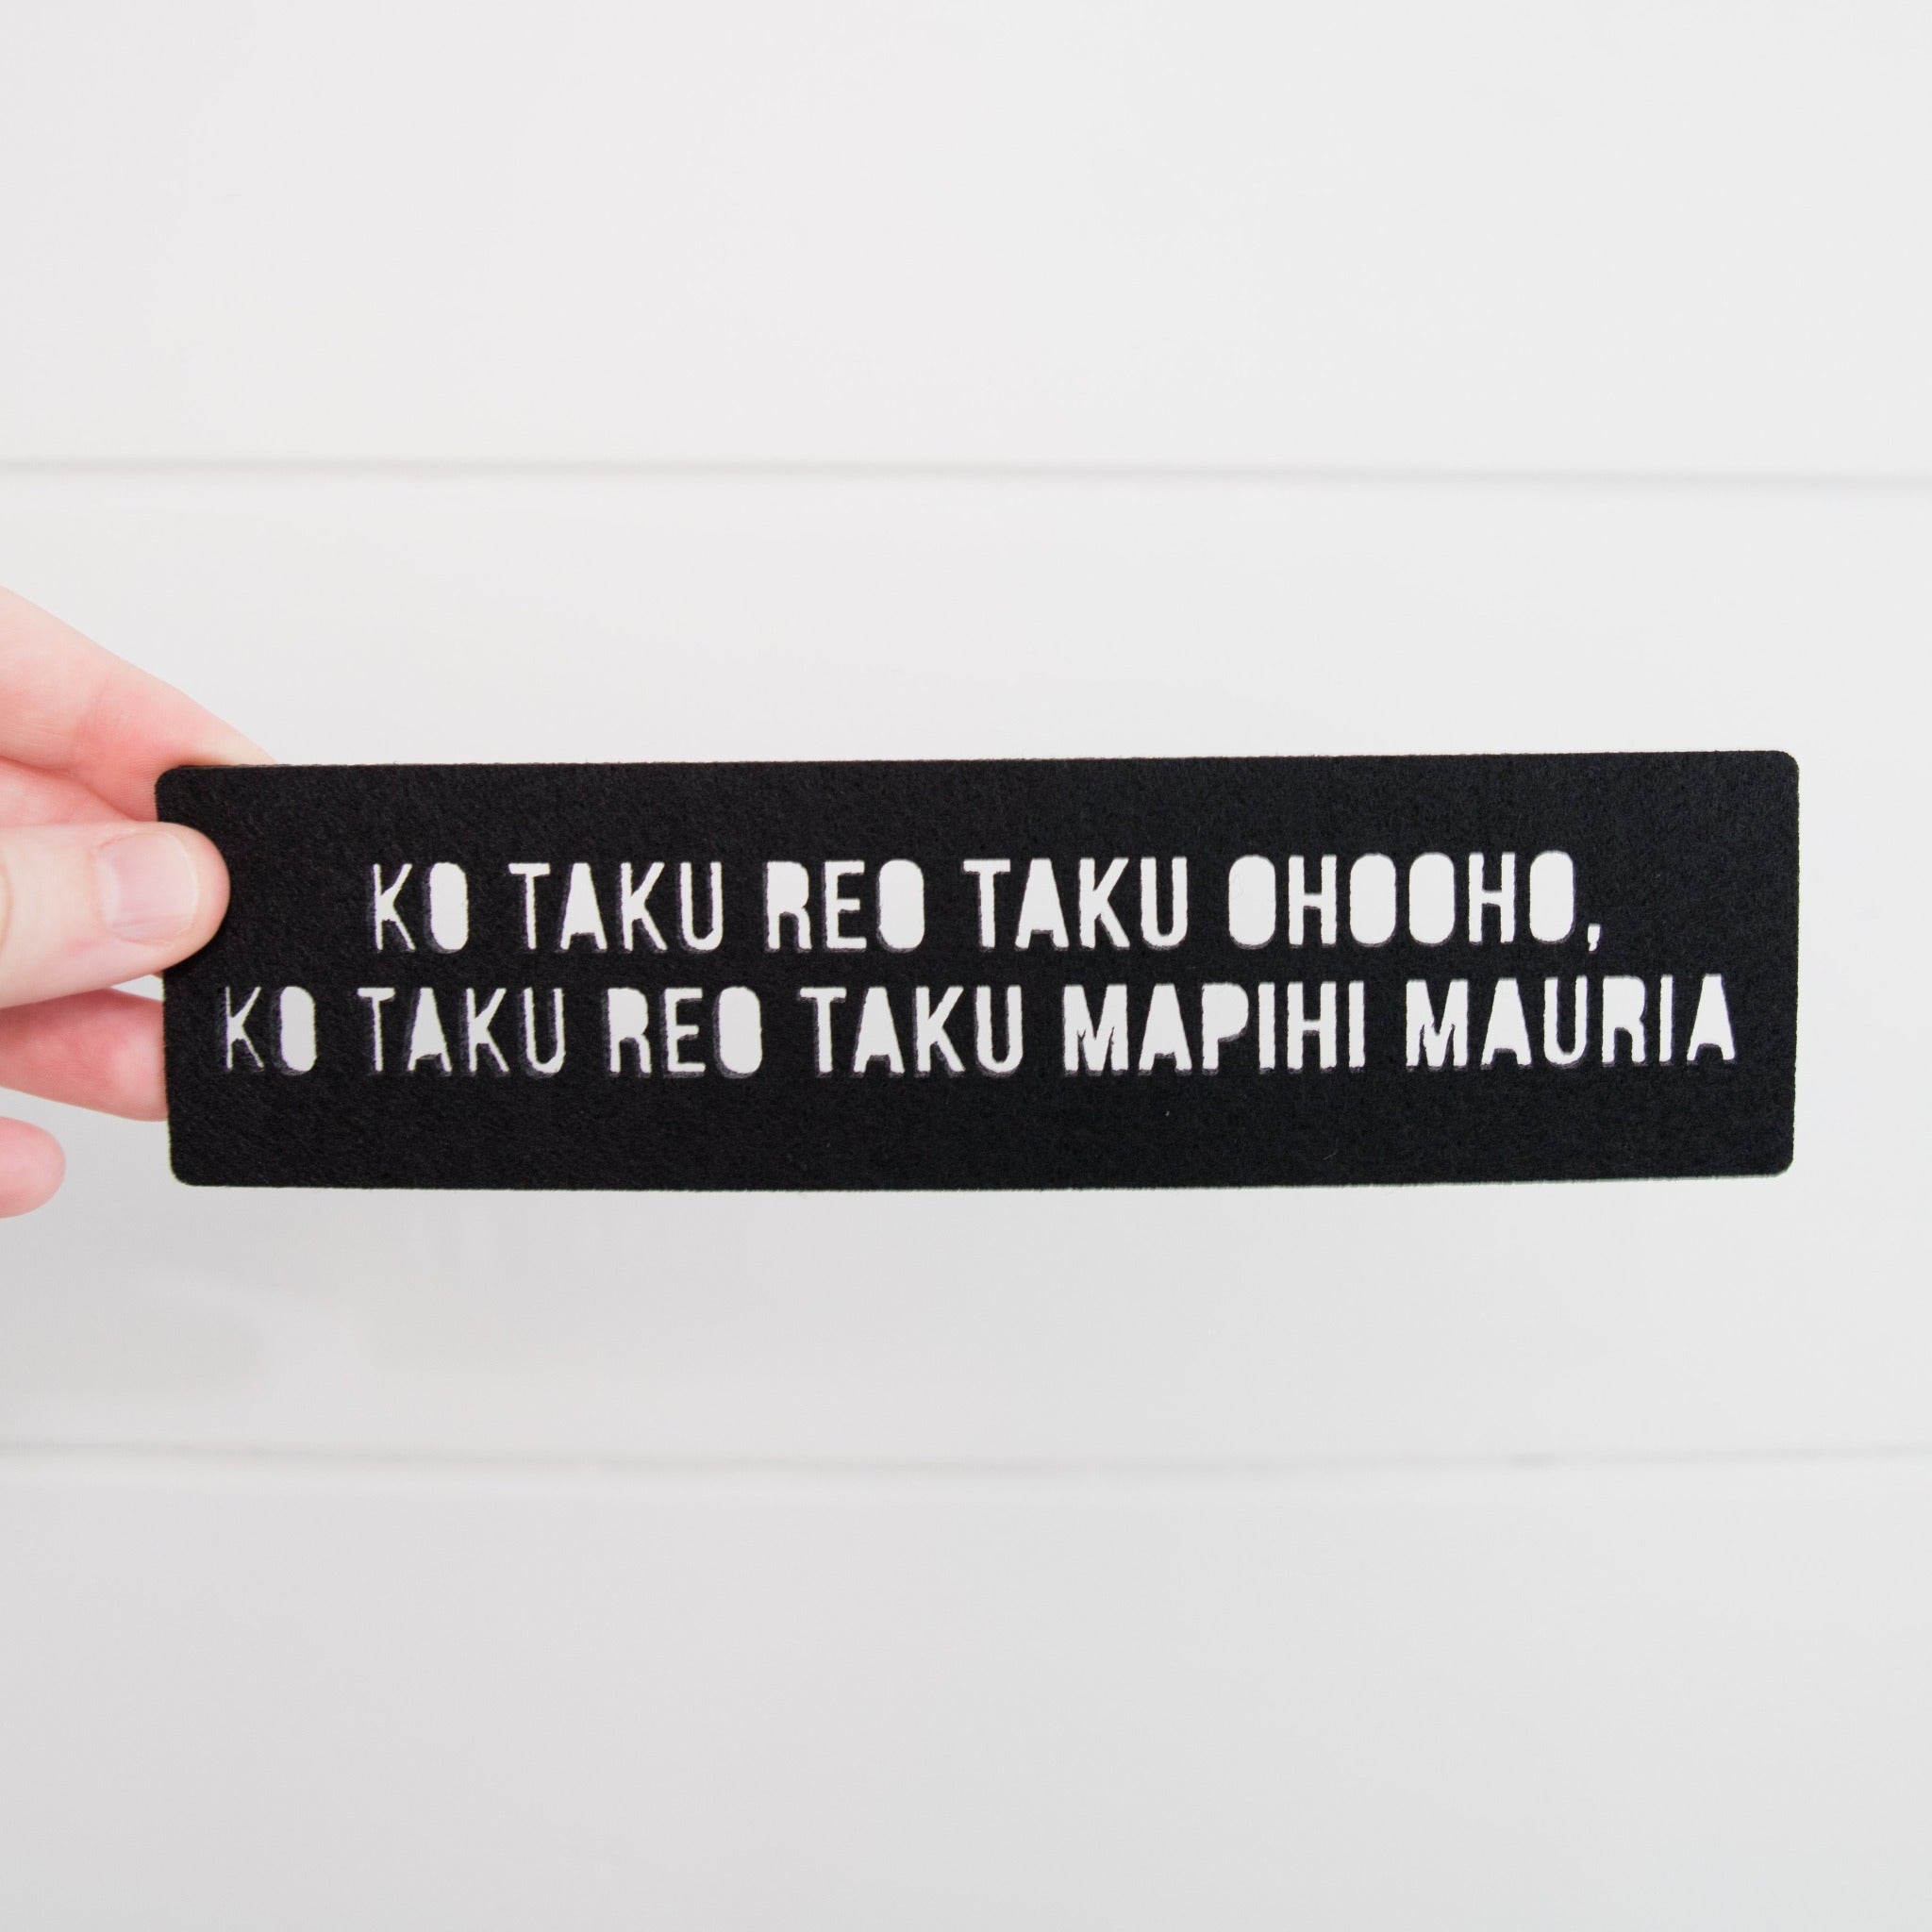 Te Reo Māori Felt Bookmark - Ko taku reo taku ohooho, ko taku reo taku mapihi mauria